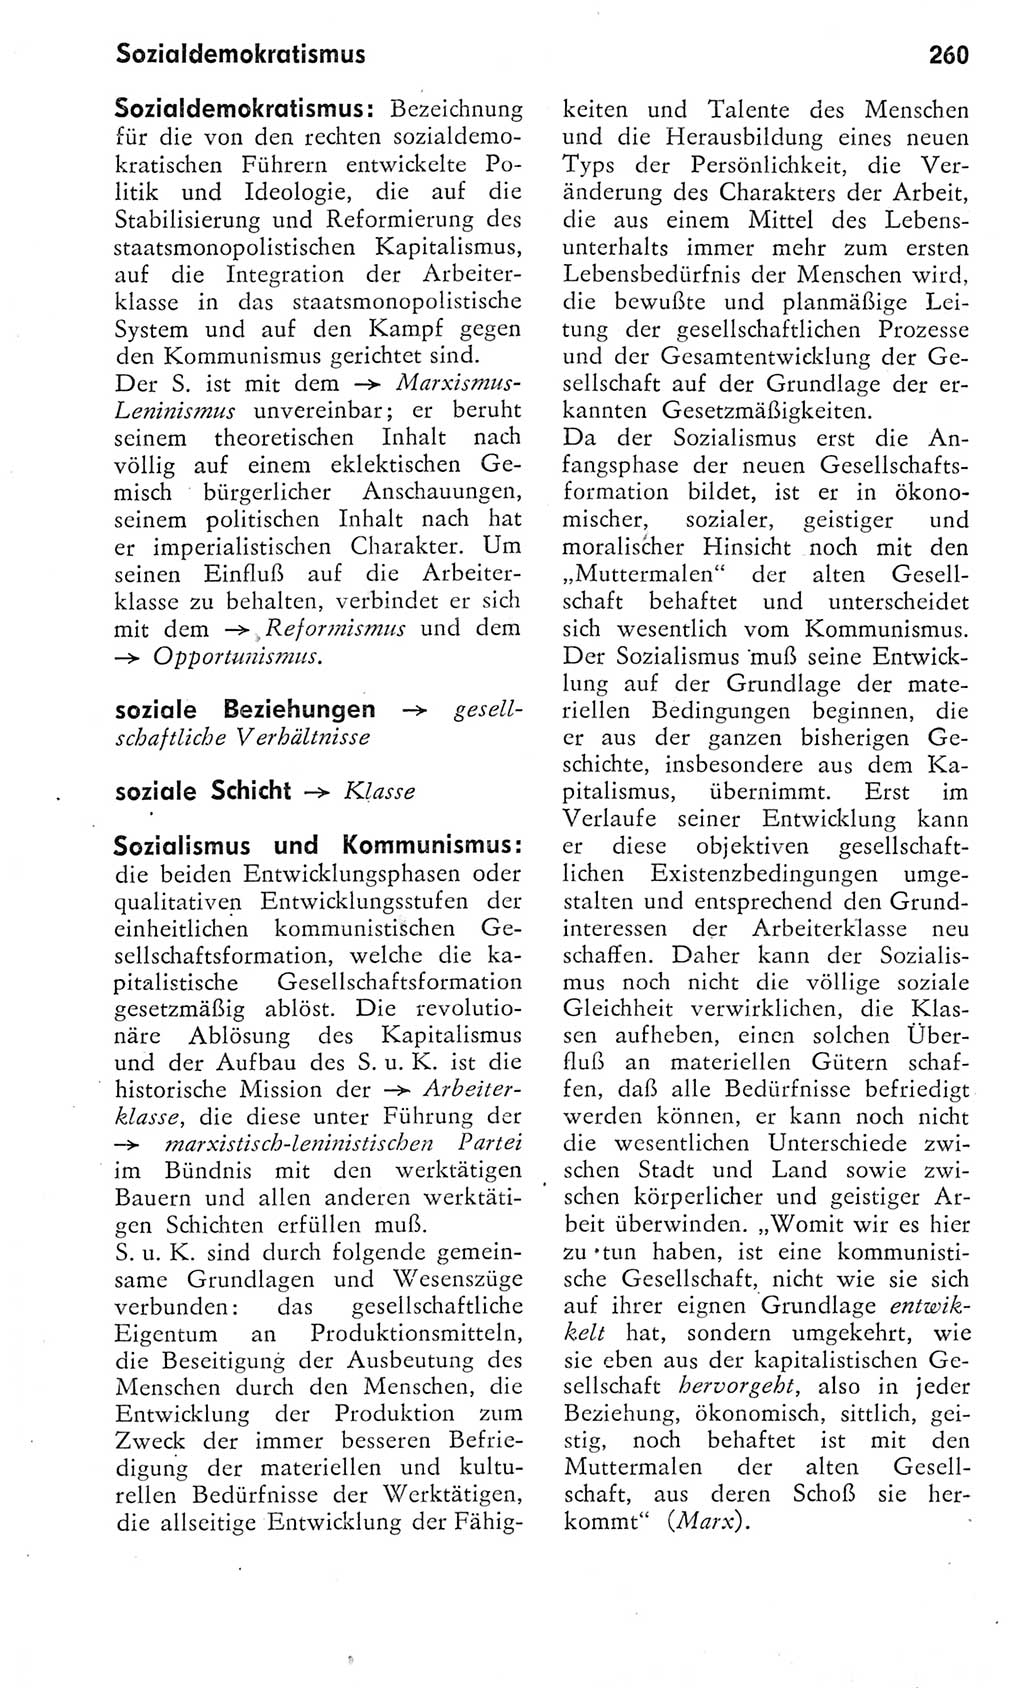 Kleines Wörterbuch der marxistisch-leninistischen Philosophie [Deutsche Demokratische Republik (DDR)] 1975, Seite 260 (Kl. Wb. ML Phil. DDR 1975, S. 260)